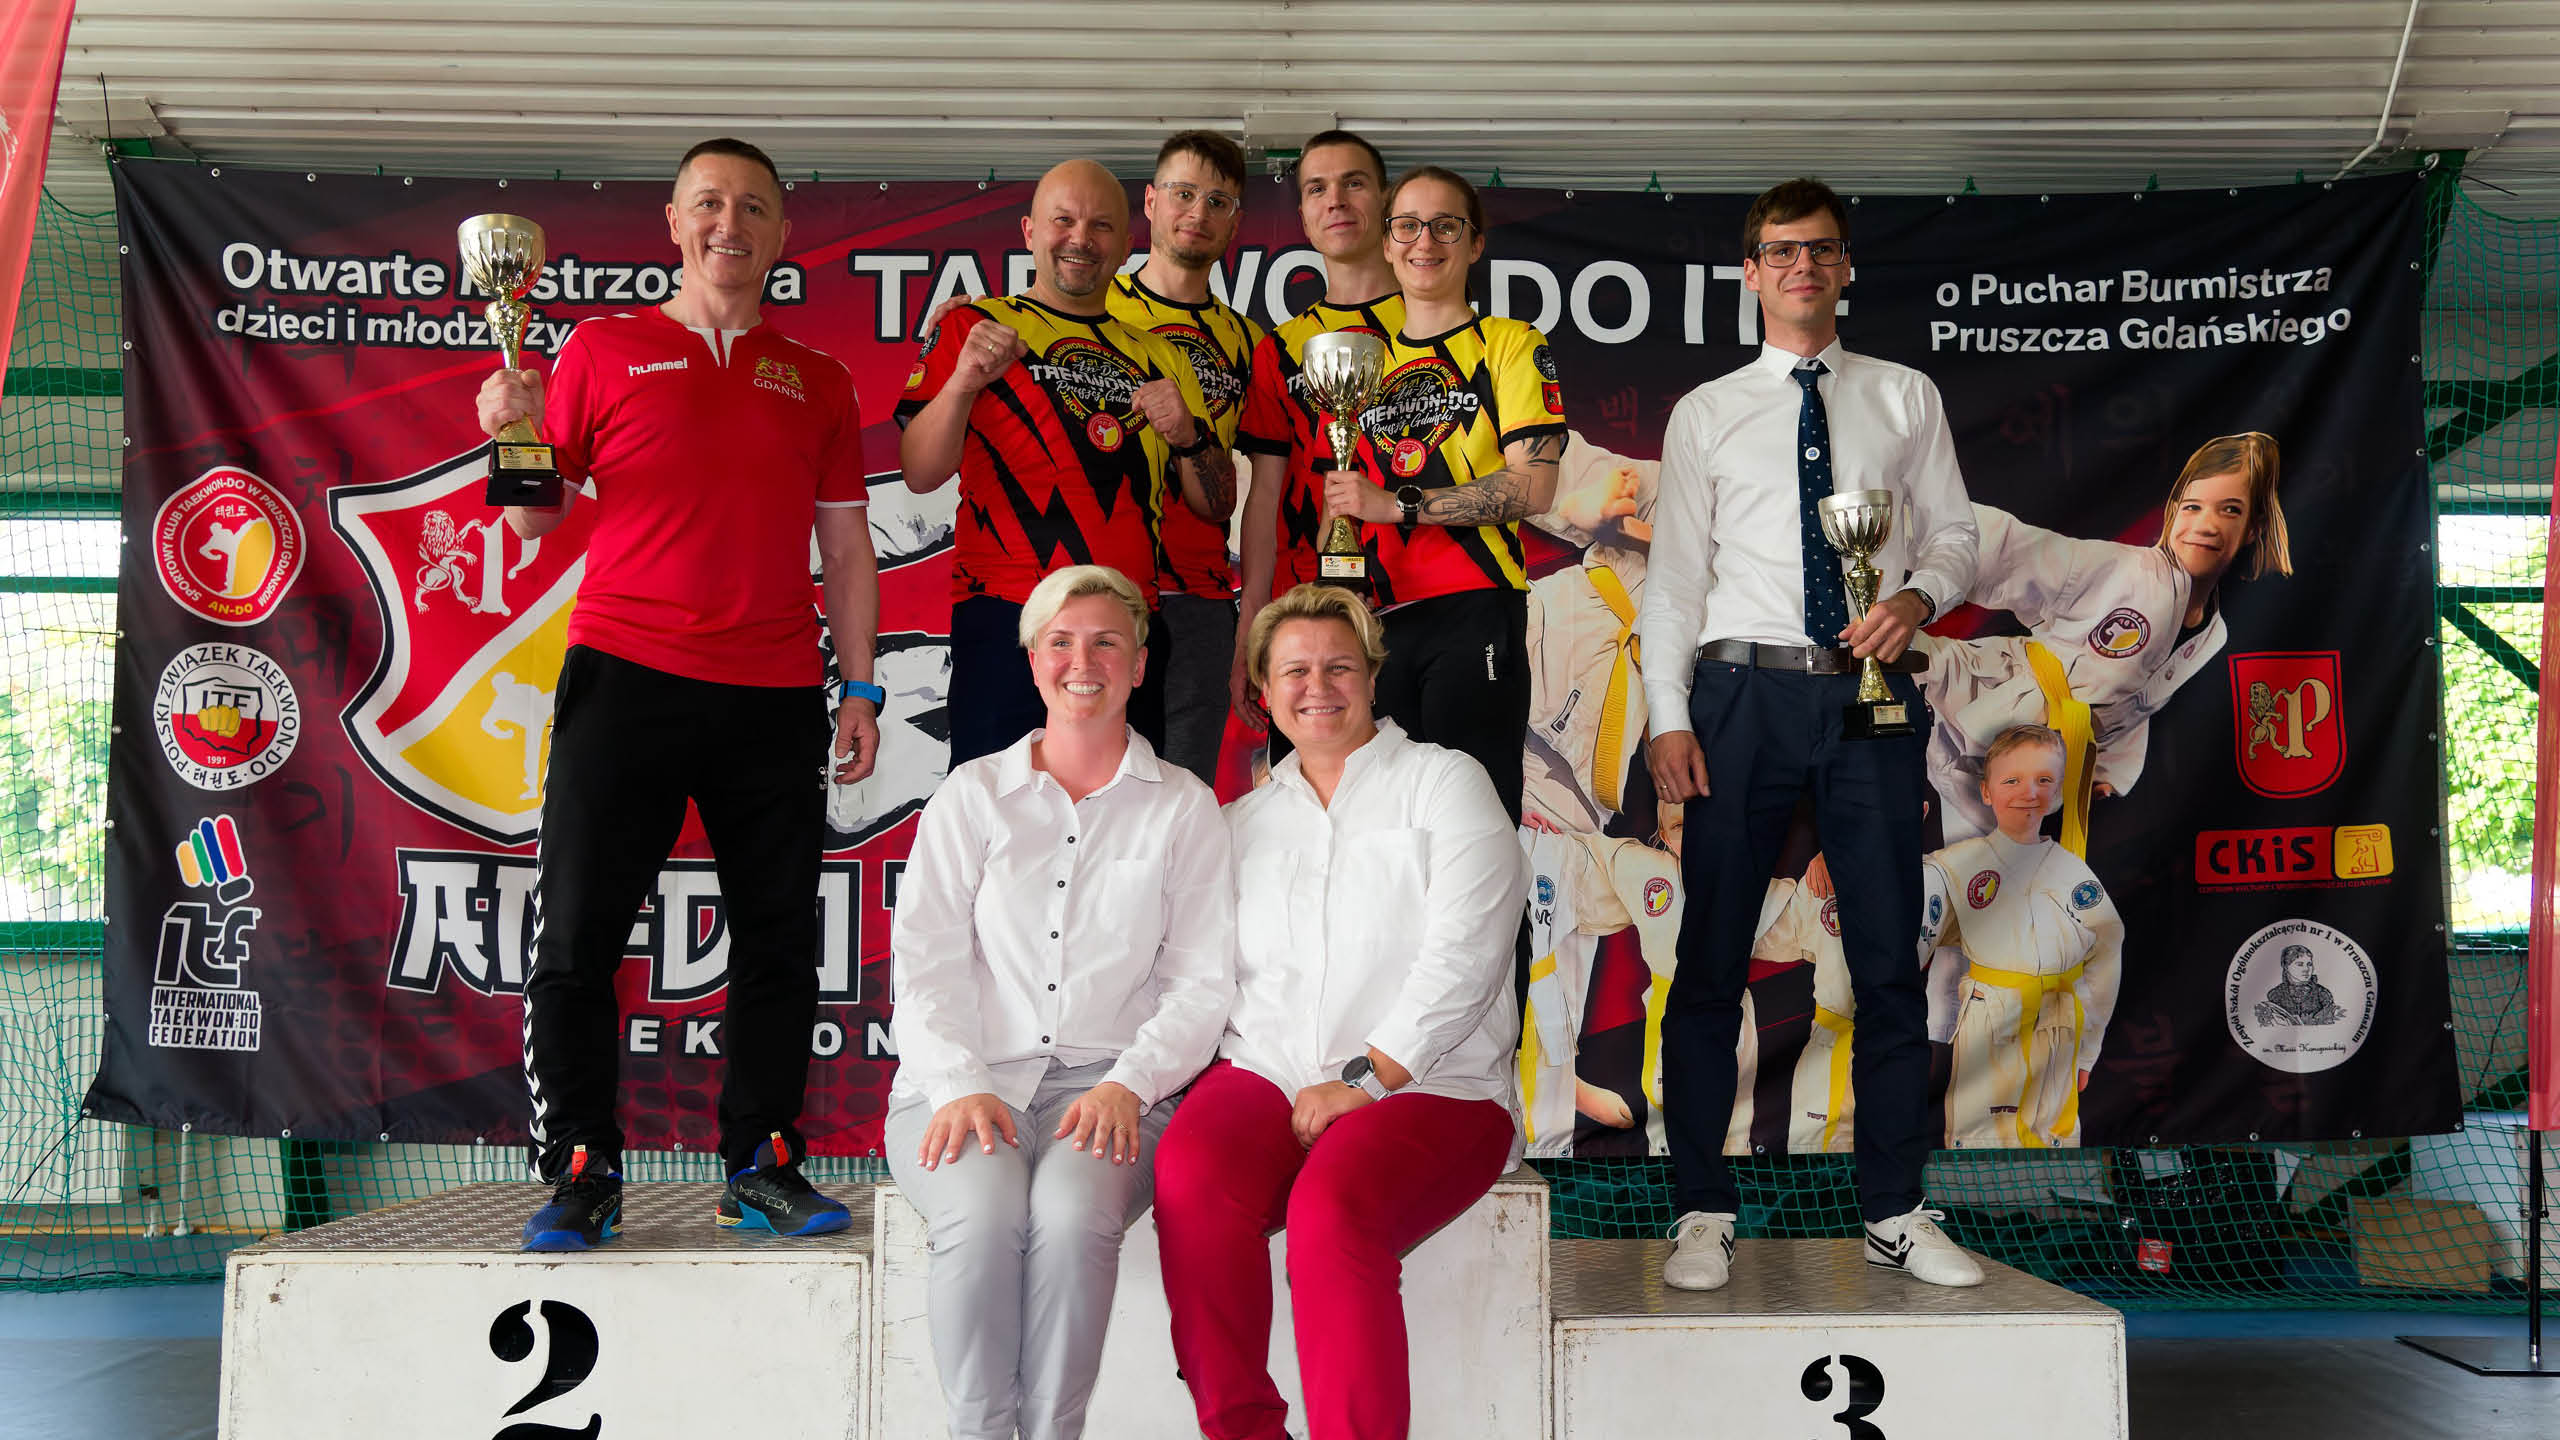 AN-DO CUP Otwarte Mistrzostwa dzieci i młodzieży w TAEKWONDO ITF o Puchar Burmistrza Pruszcza Gdańskiego za nami